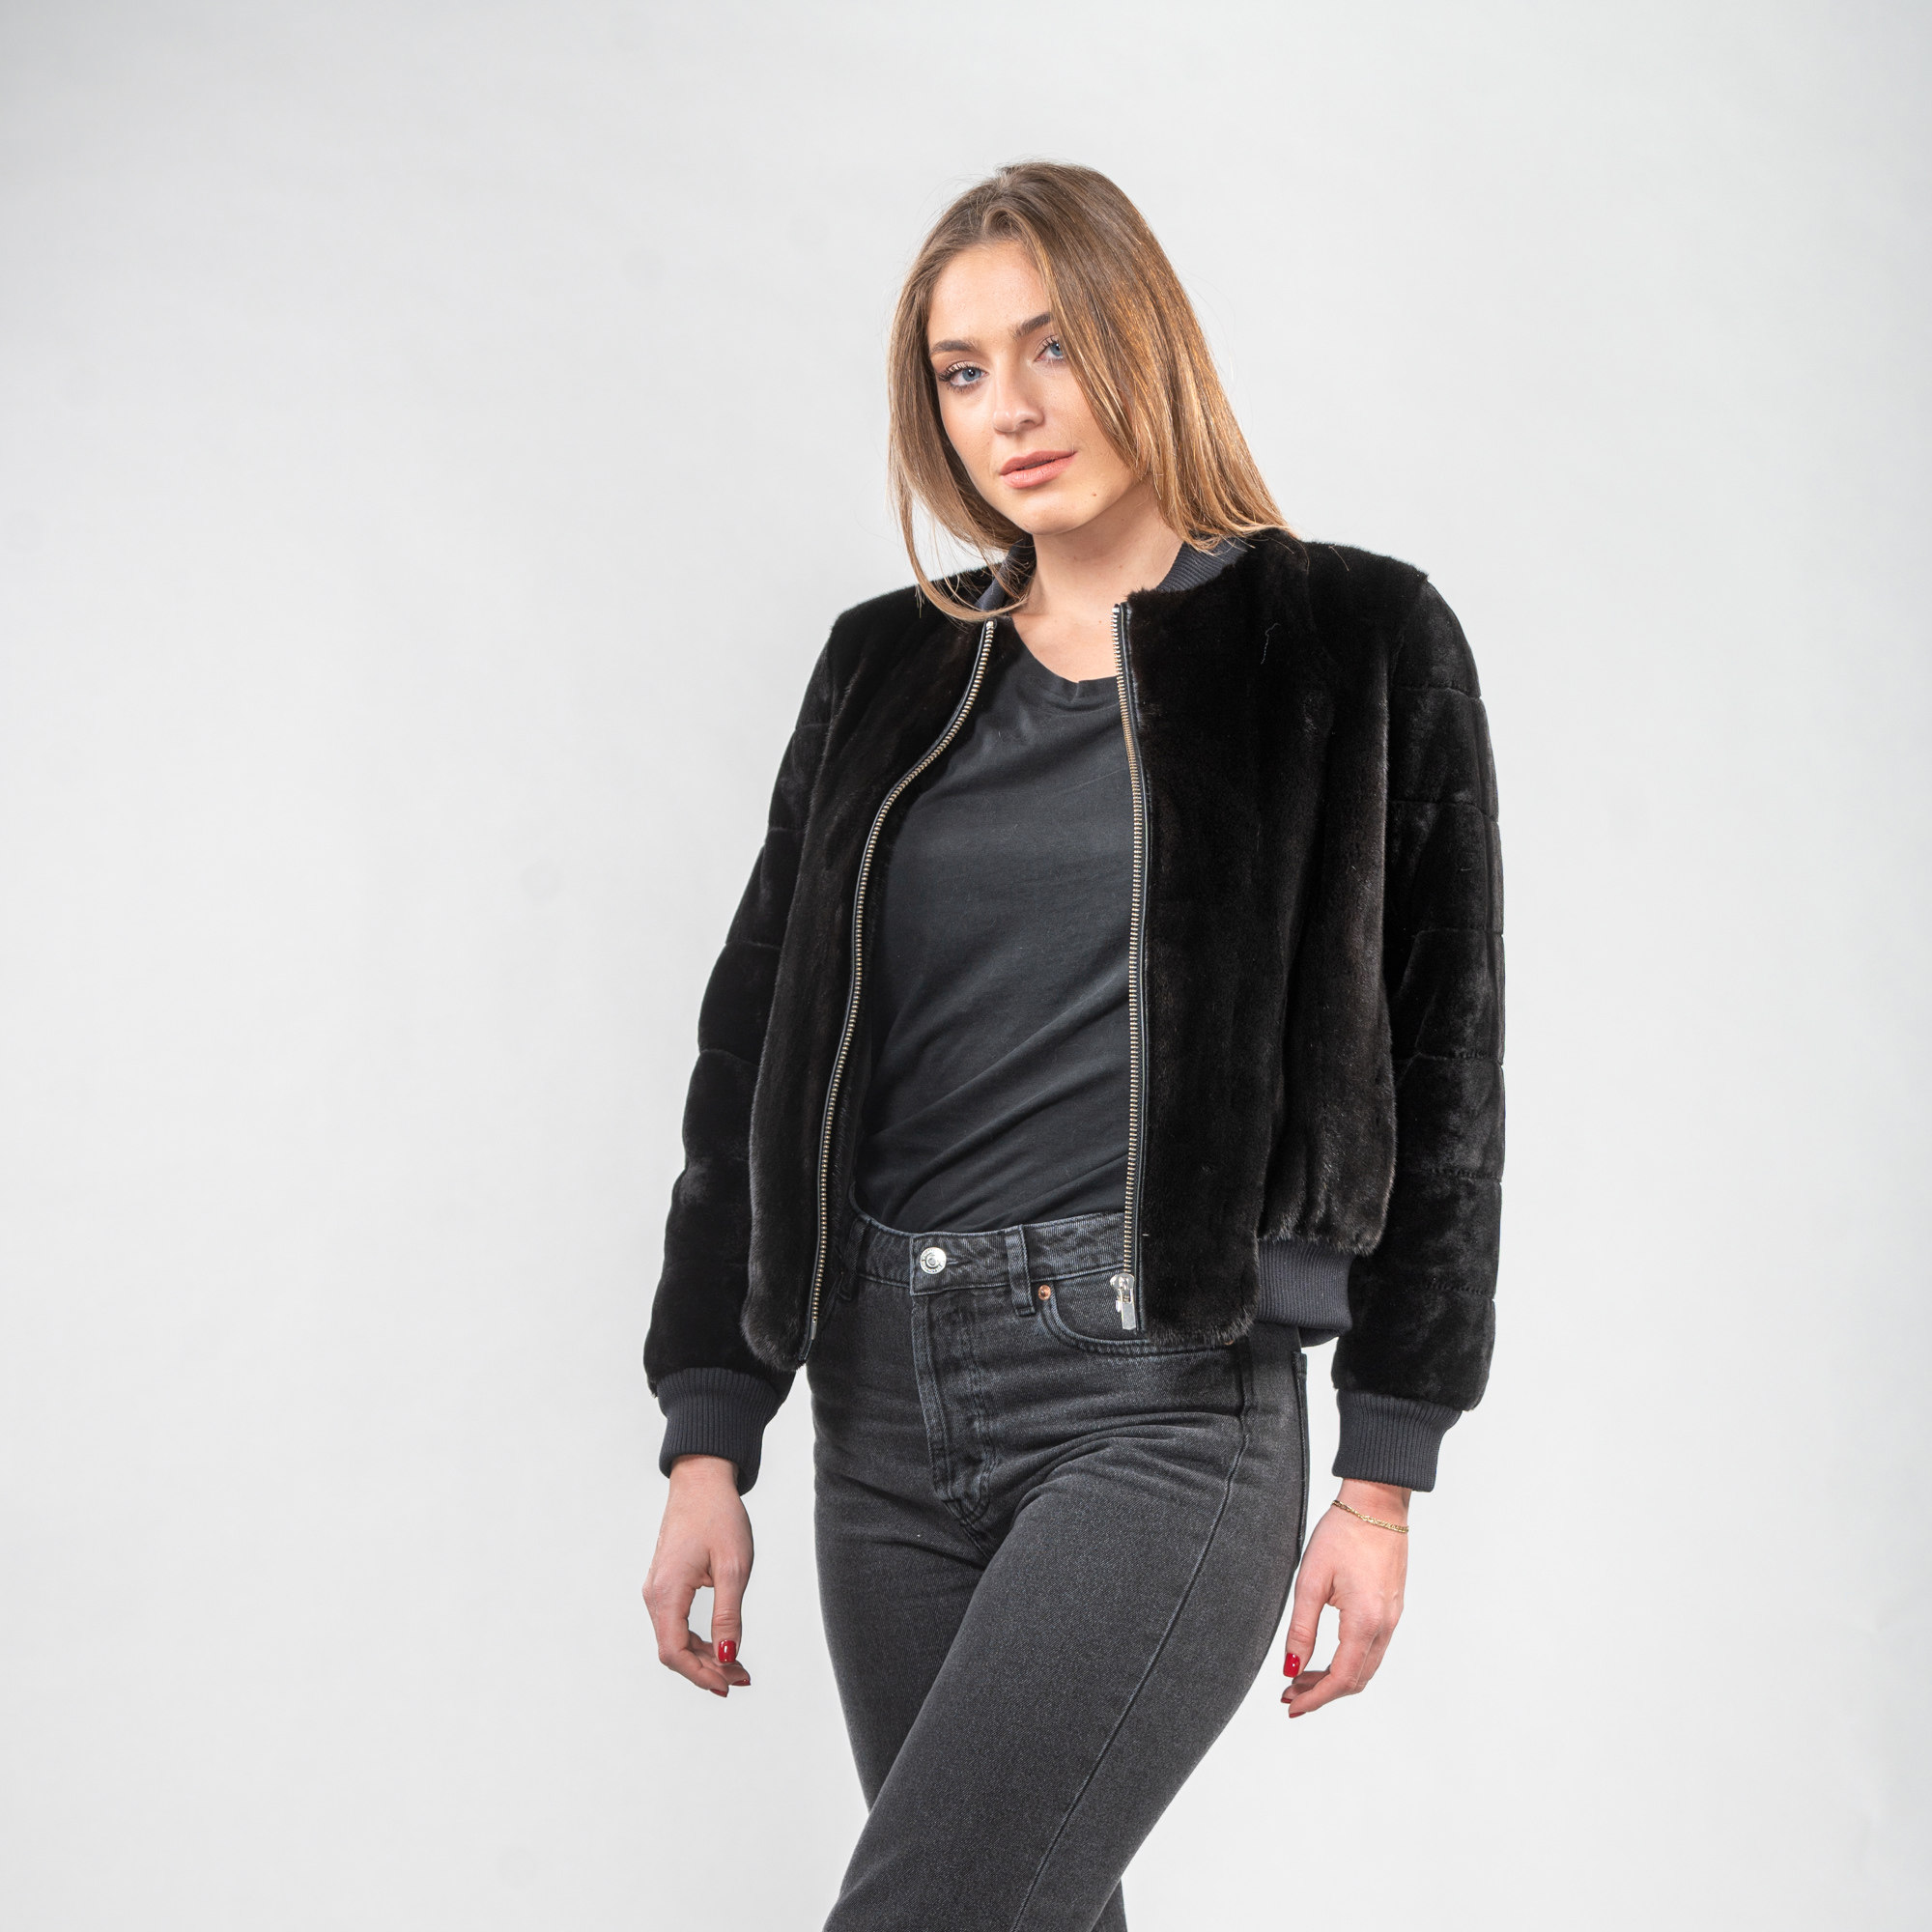 Mink fur short jacket in black color